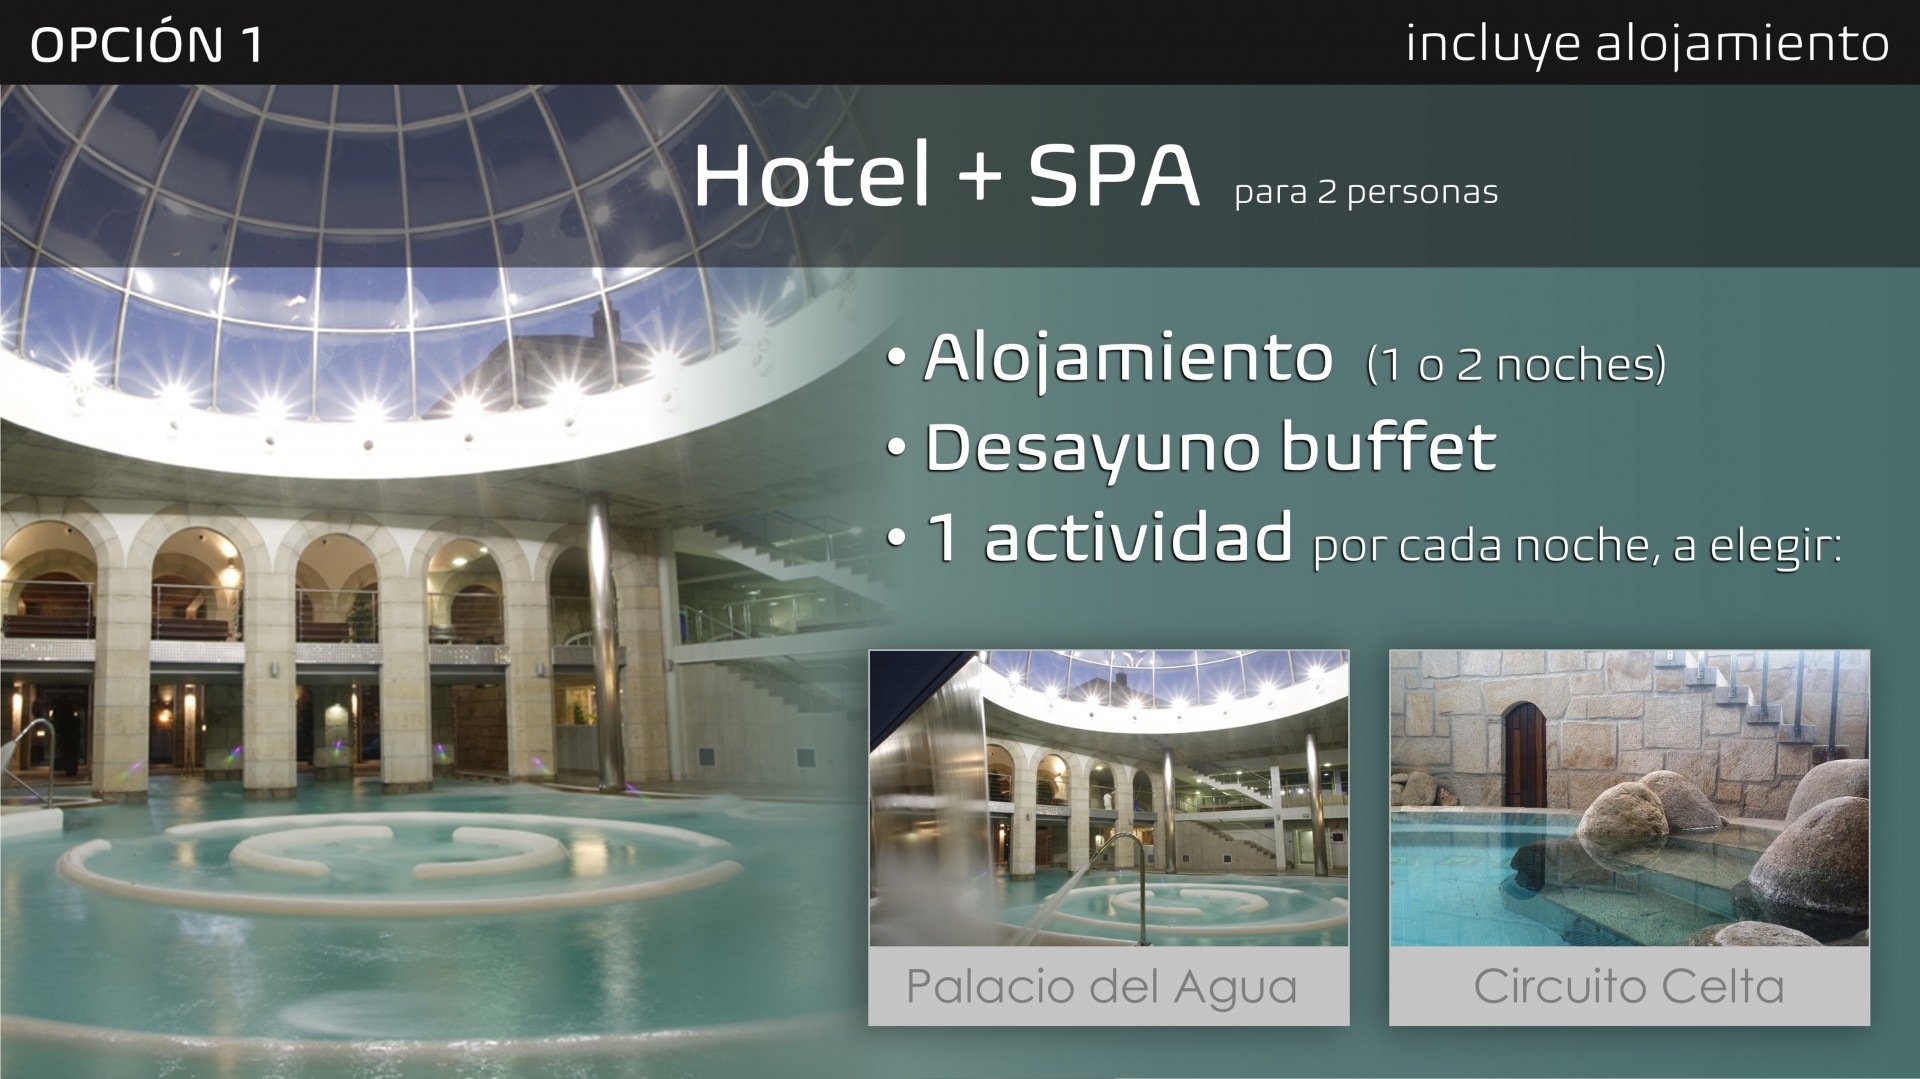 REGALA MONDARIZ - OPCIÓN 1 - HOTEL + SPA para 2 personas